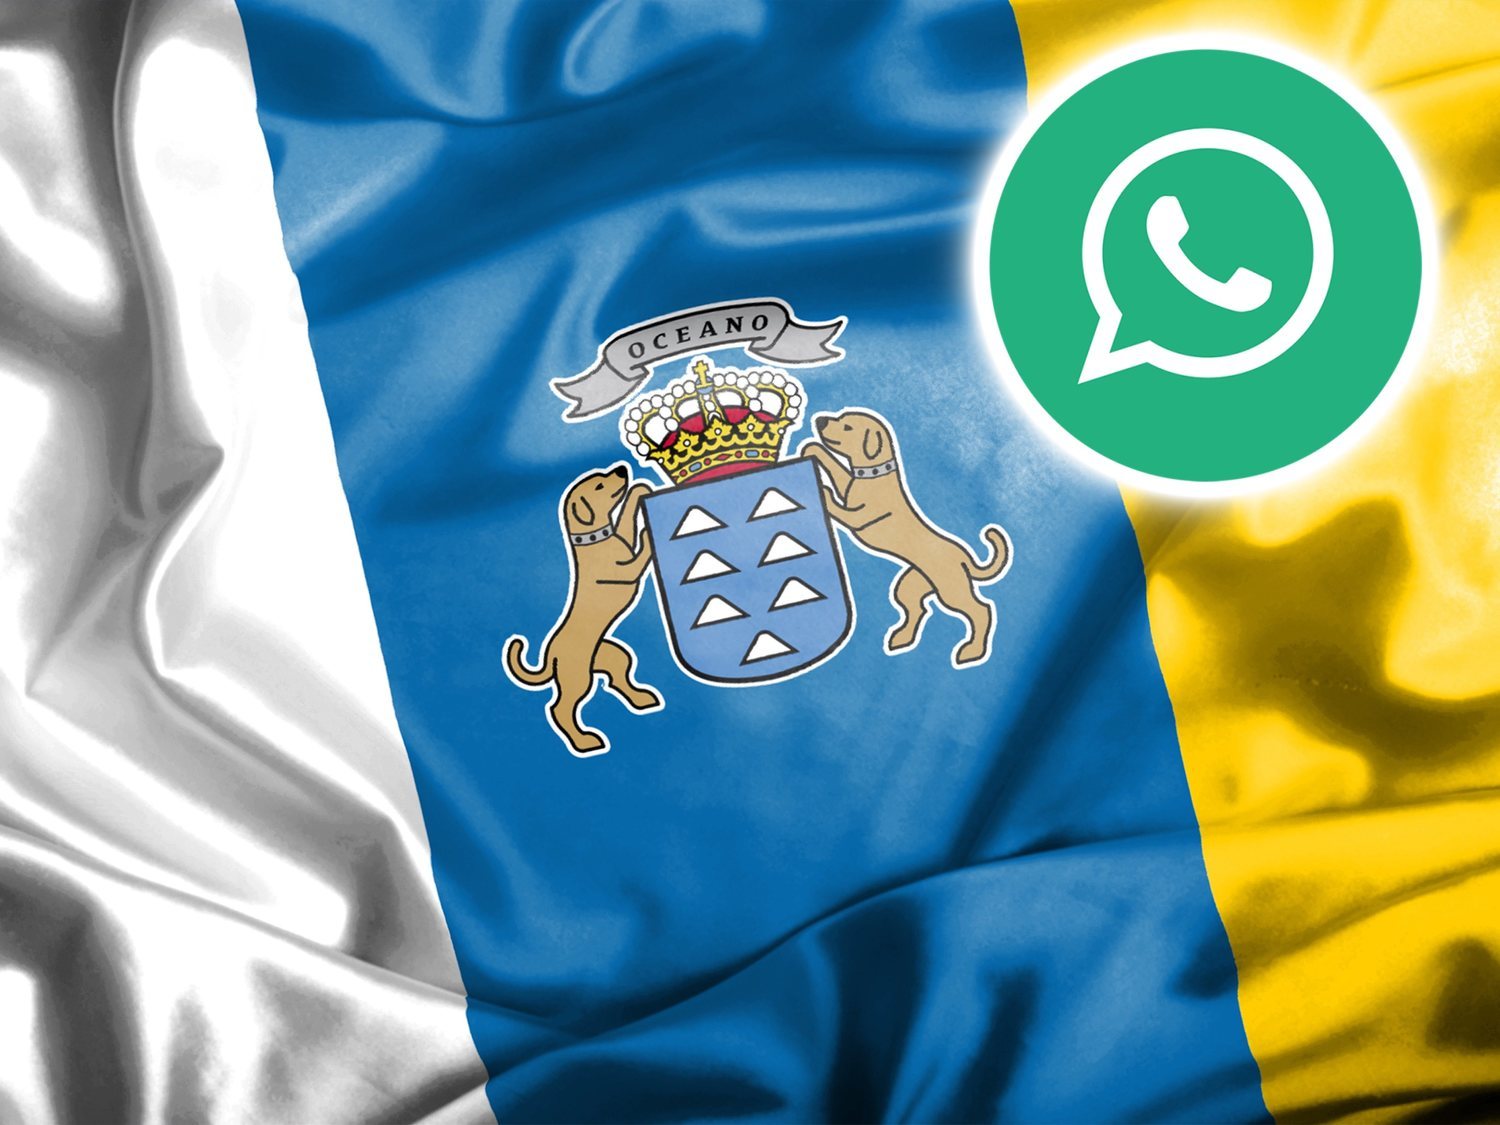 El polémico motivo por el que Canarias es la única autonomía que aparece en los emojis de WhatsApp